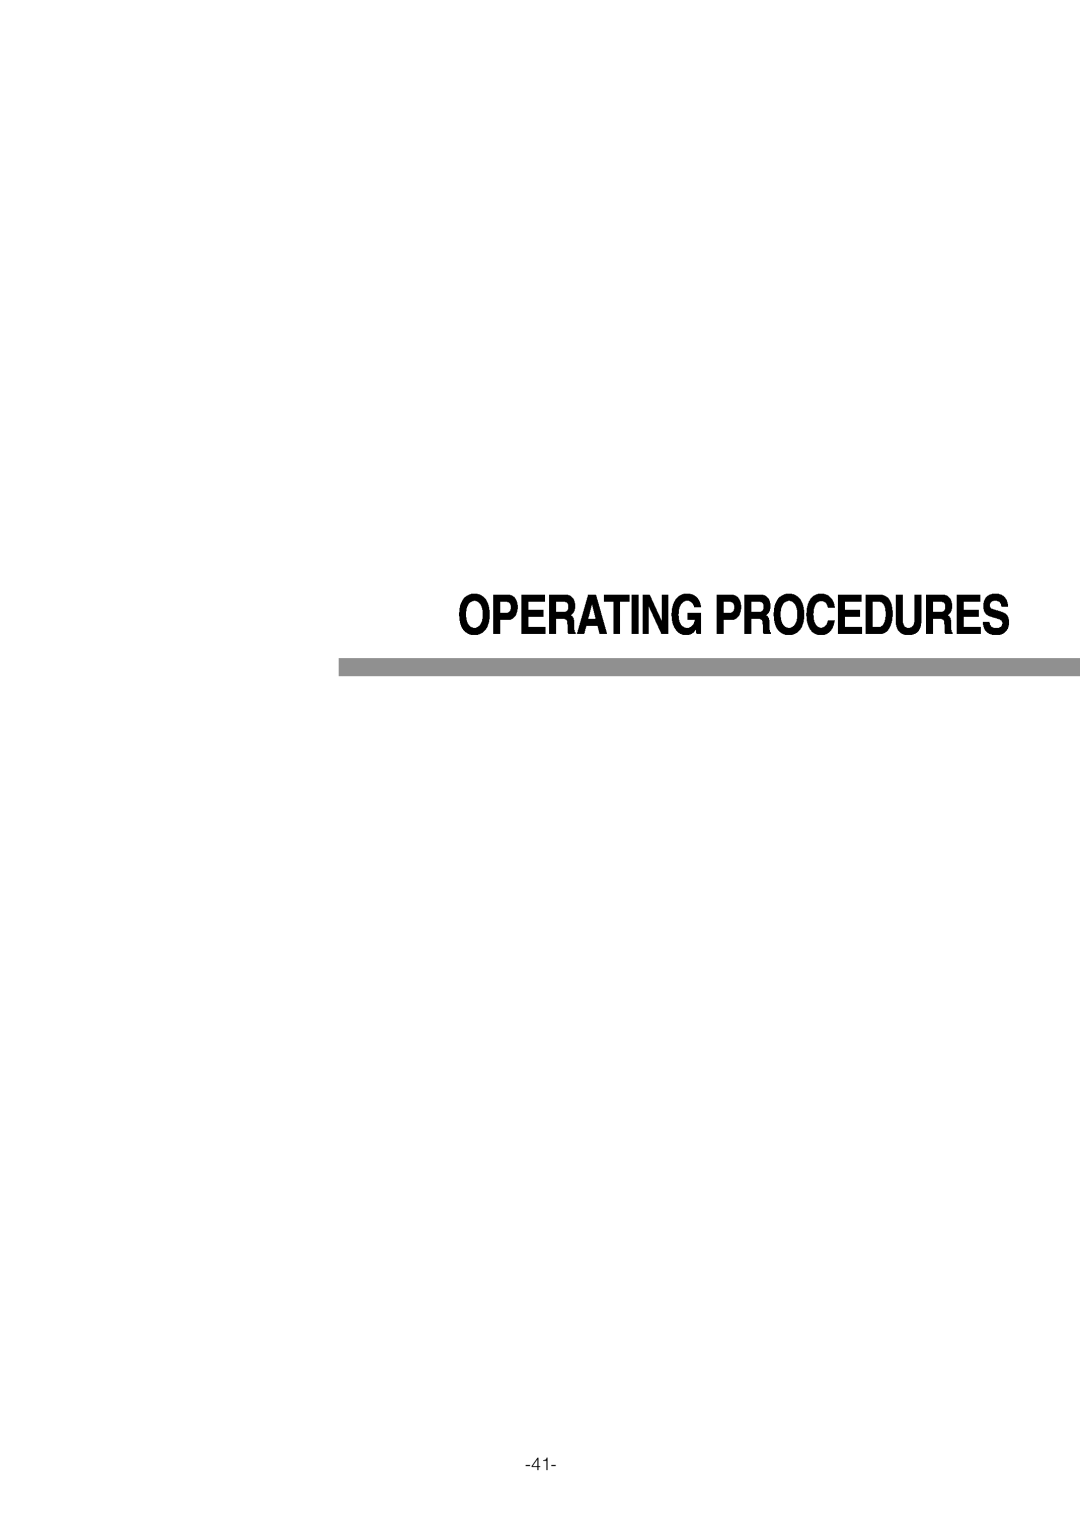 Pantech WV-NW474S manual Operating Procedures 